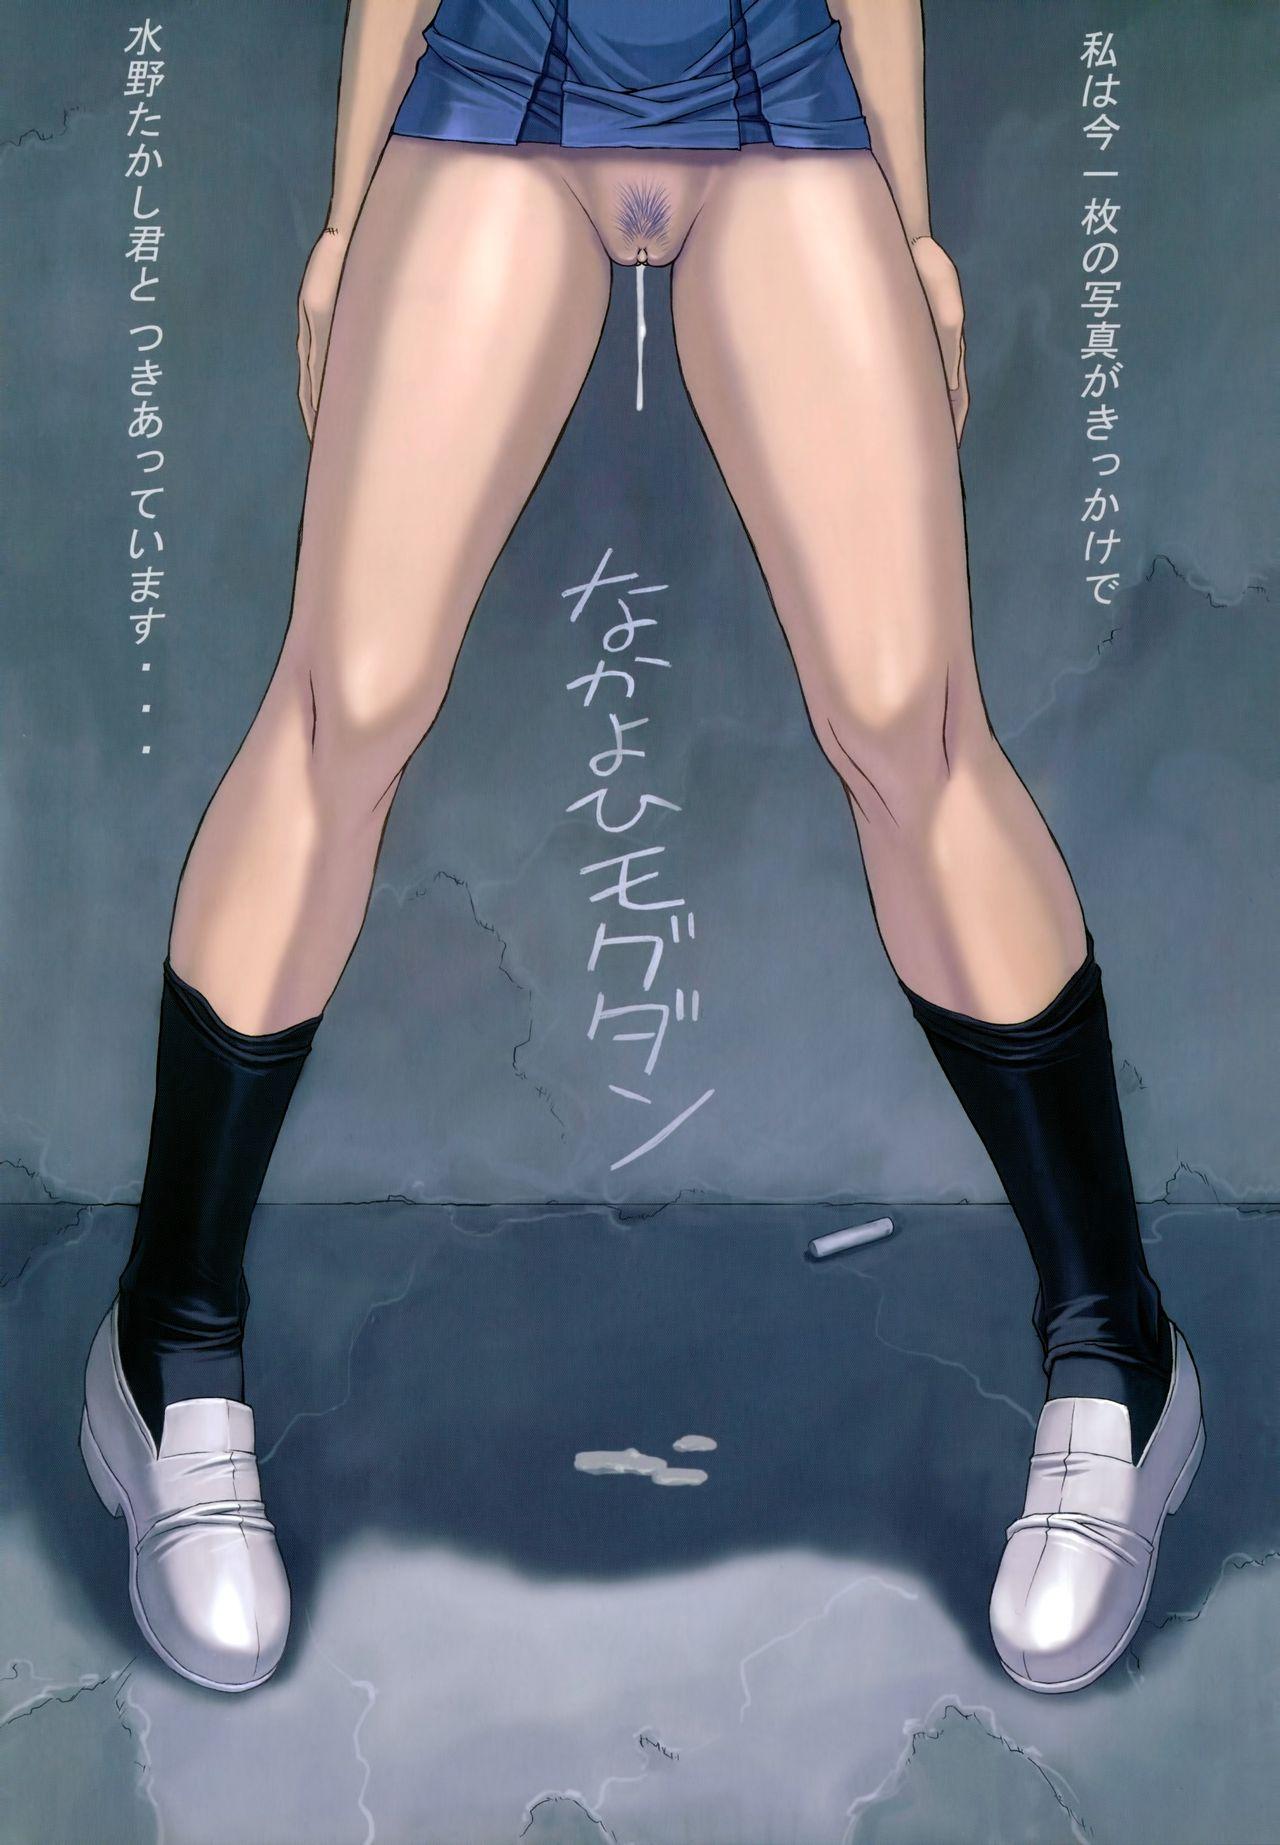 Interracial Hardcore Ayanami 4 Boku no Kanojohen - Neon genesis evangelion Freaky - Page 3